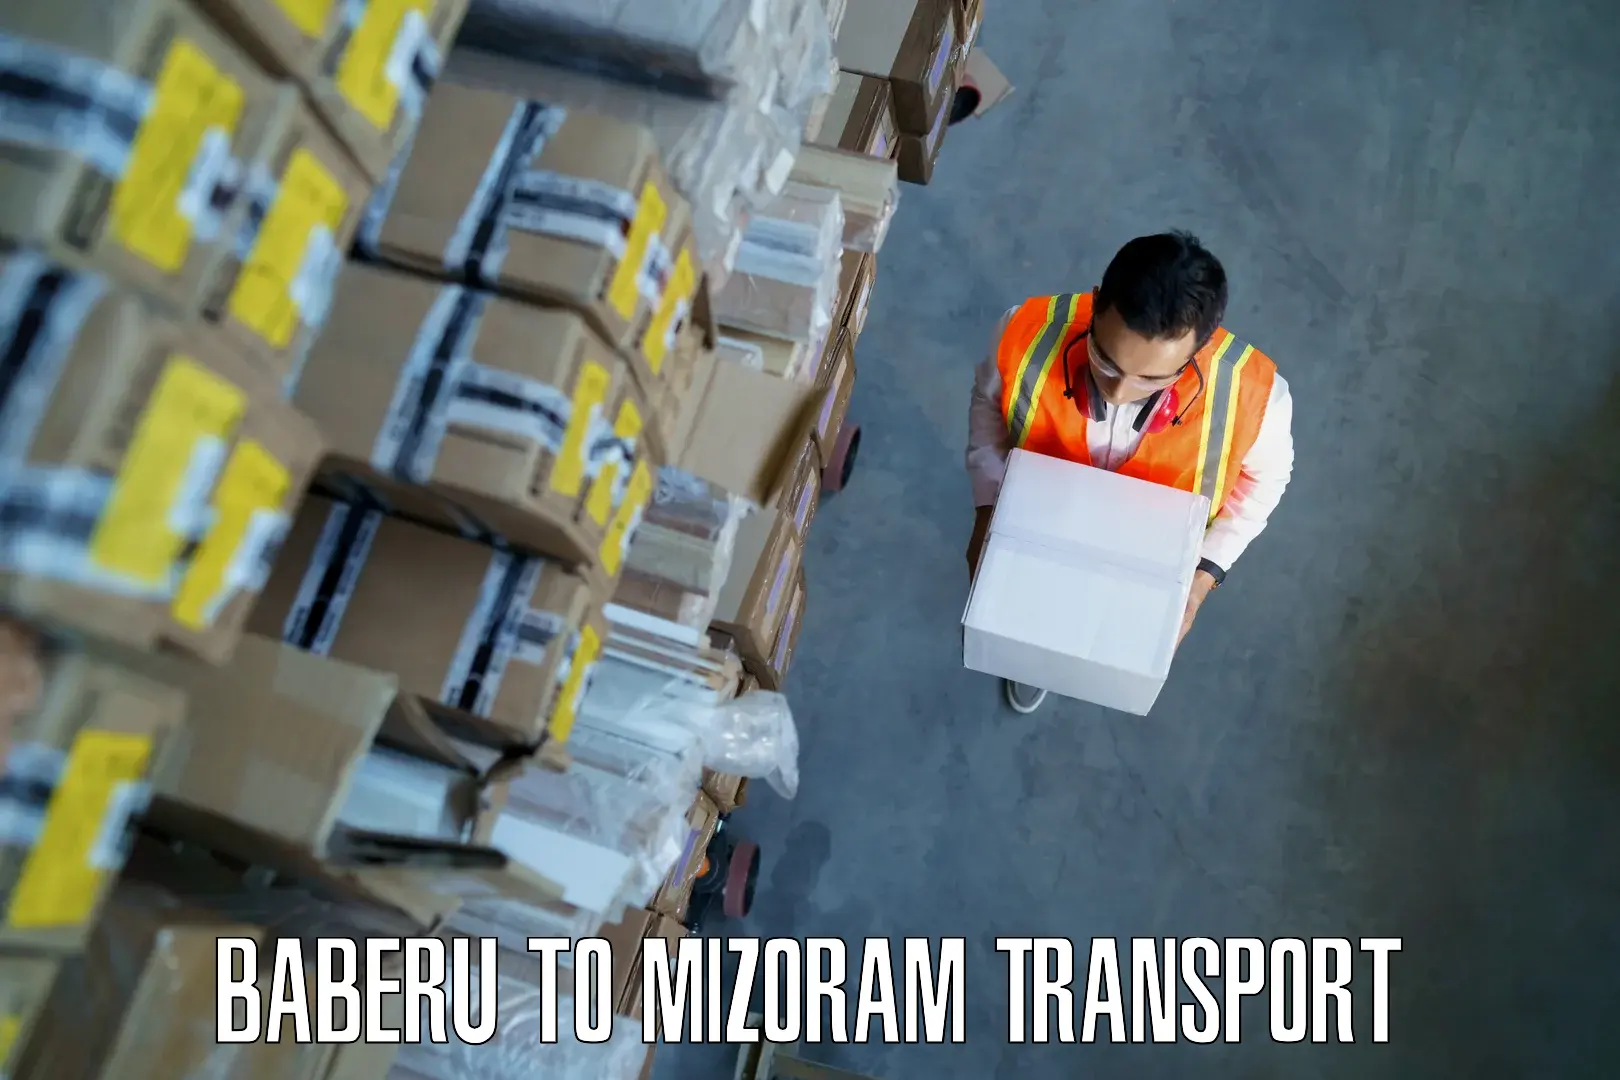 India truck logistics services Baberu to Darlawn